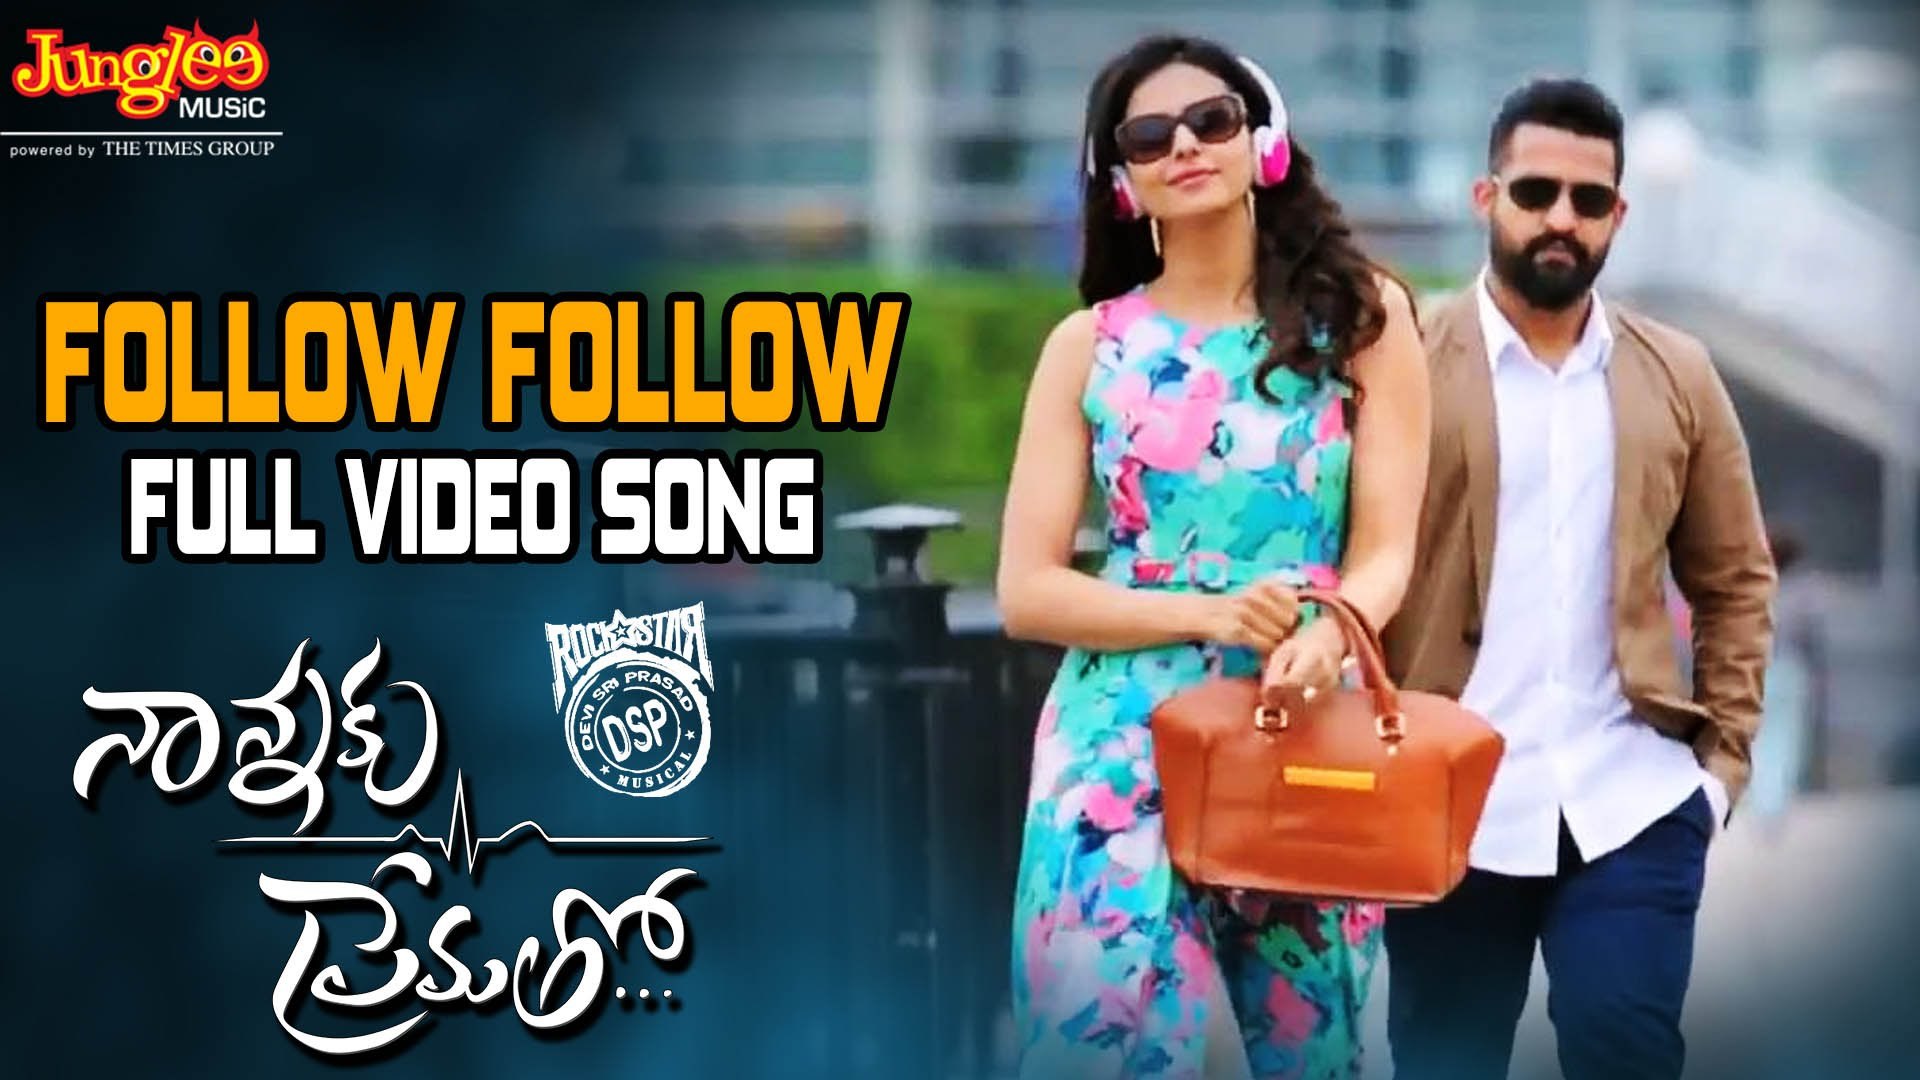 Follow Follow Full Video Song Nannaku Prematho Jr Ntr, - Ntr Rakul Preet Singh , HD Wallpaper & Backgrounds